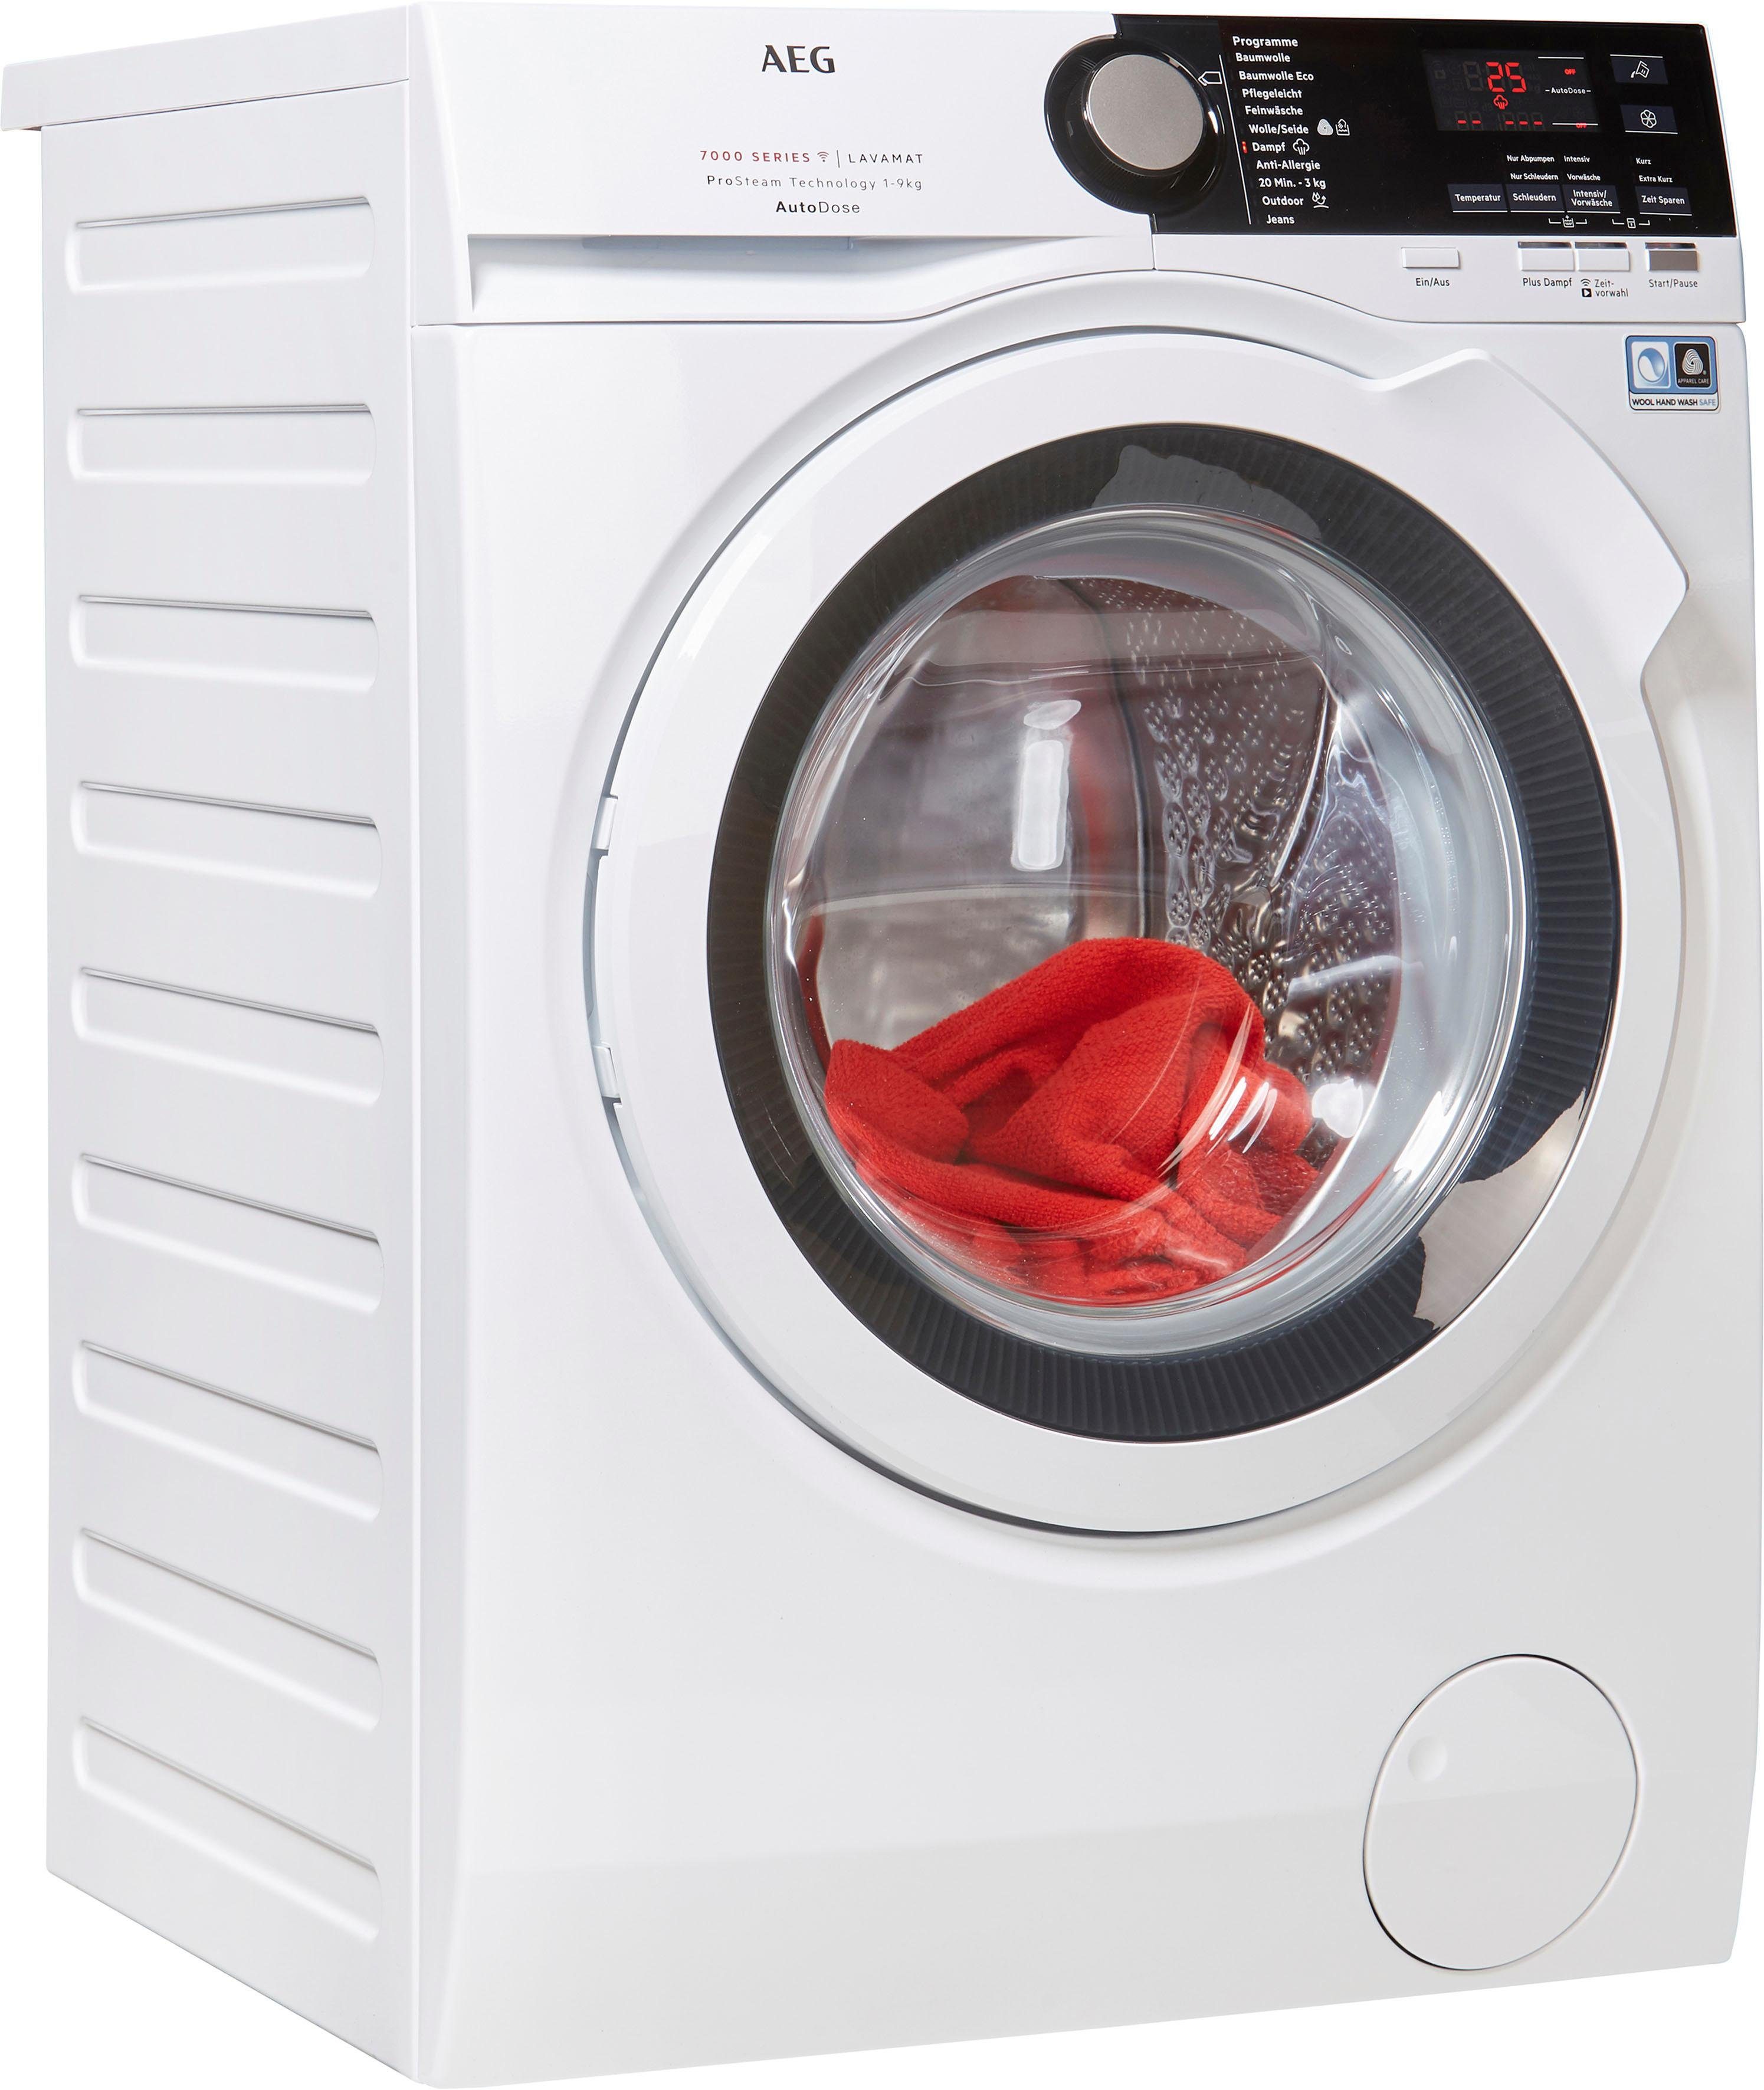 AEG Waschmaschine SERIE 7000 LAVAMAT L7FB78490, 9 kg, 1400 U/min, mit  AutoDose & WiFi Steuerung online kaufen | OTTO